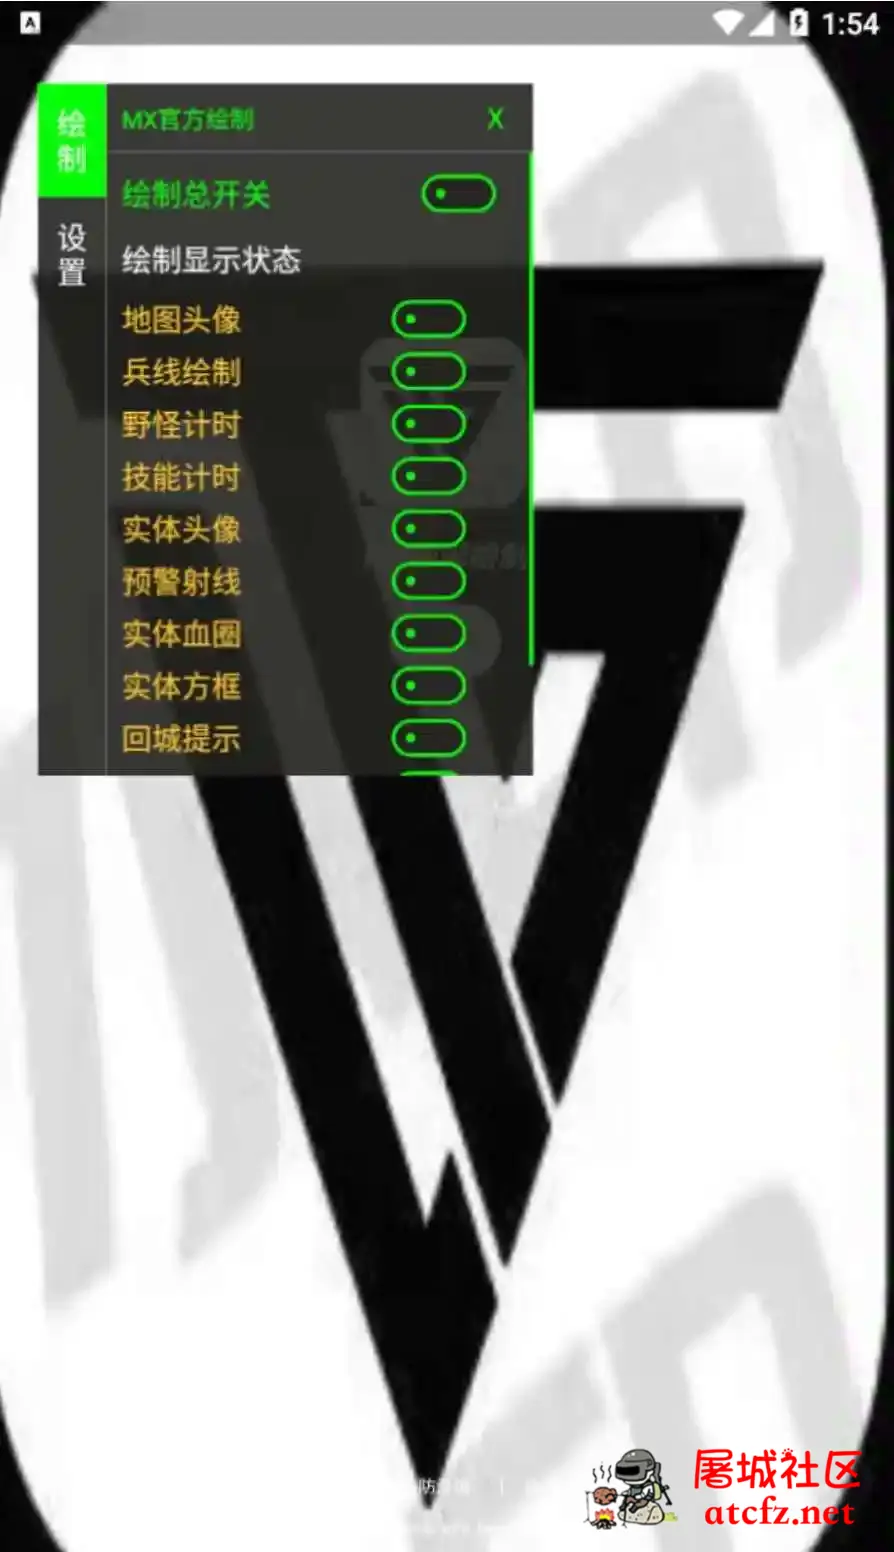 王者荣耀MX绘制透视CD野怪计时插件破解版 屠城辅助网www.tcfz1.com4256